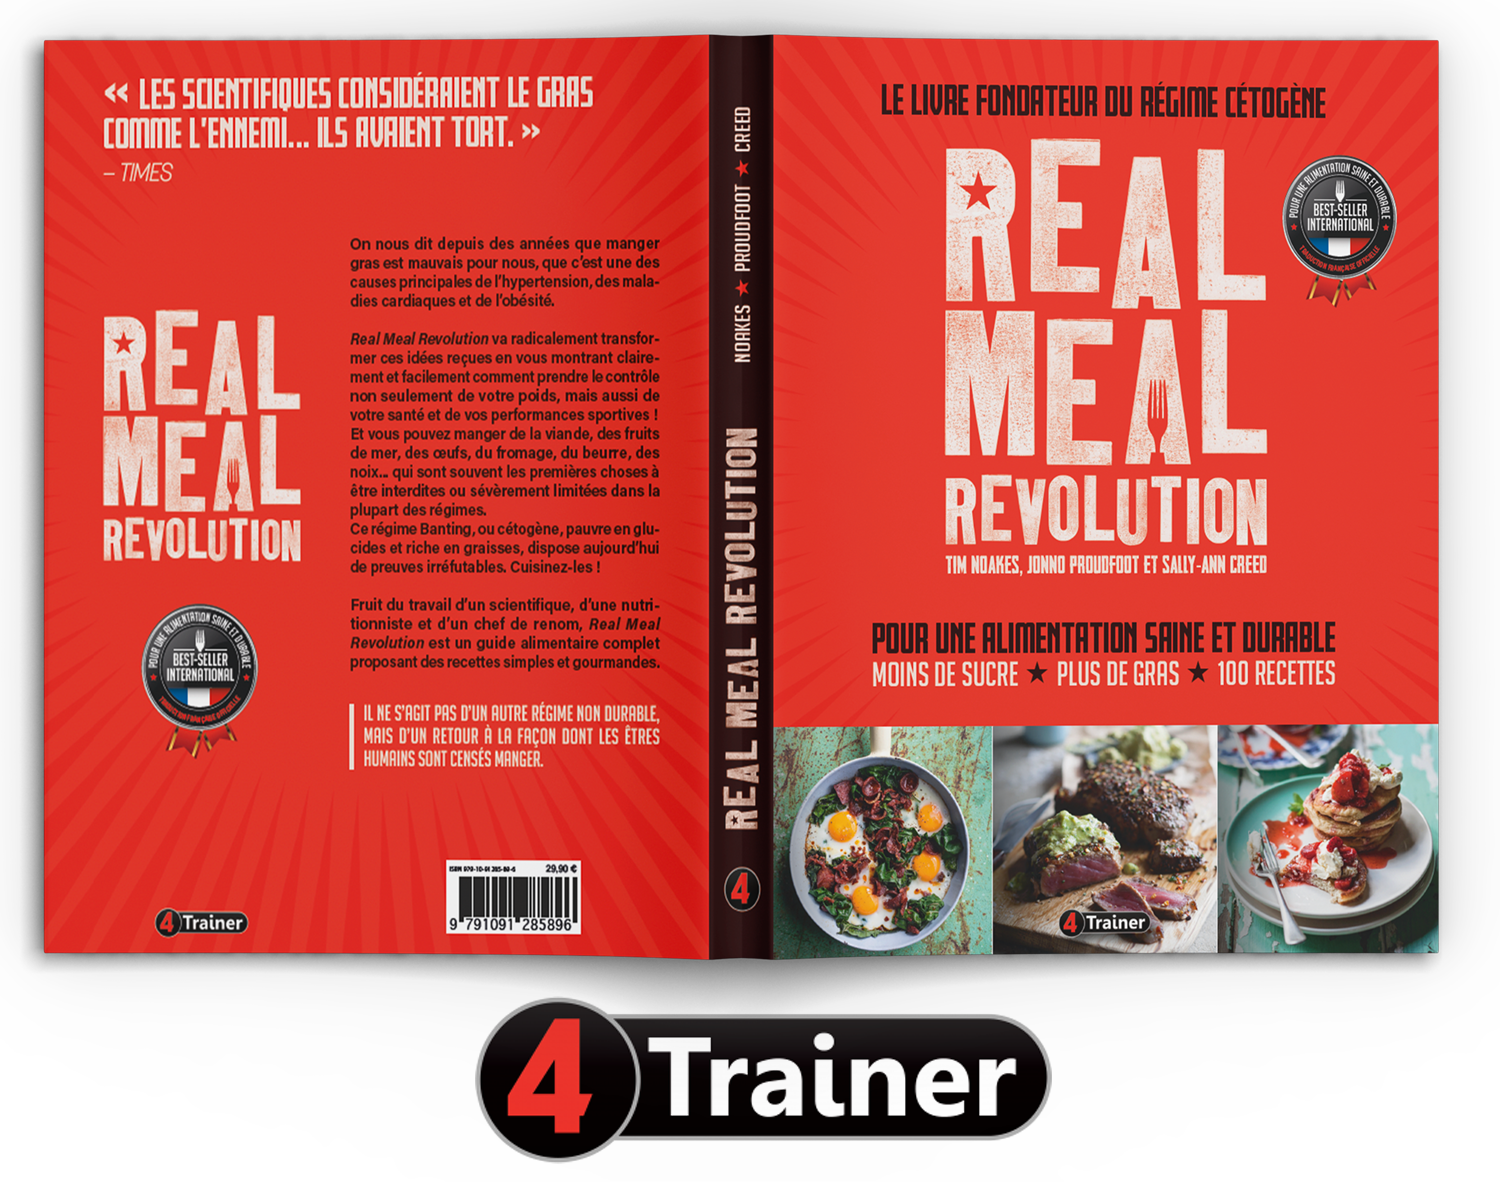 Real Meal Revolution - Le Livre Fondateur du Régime Cétogène